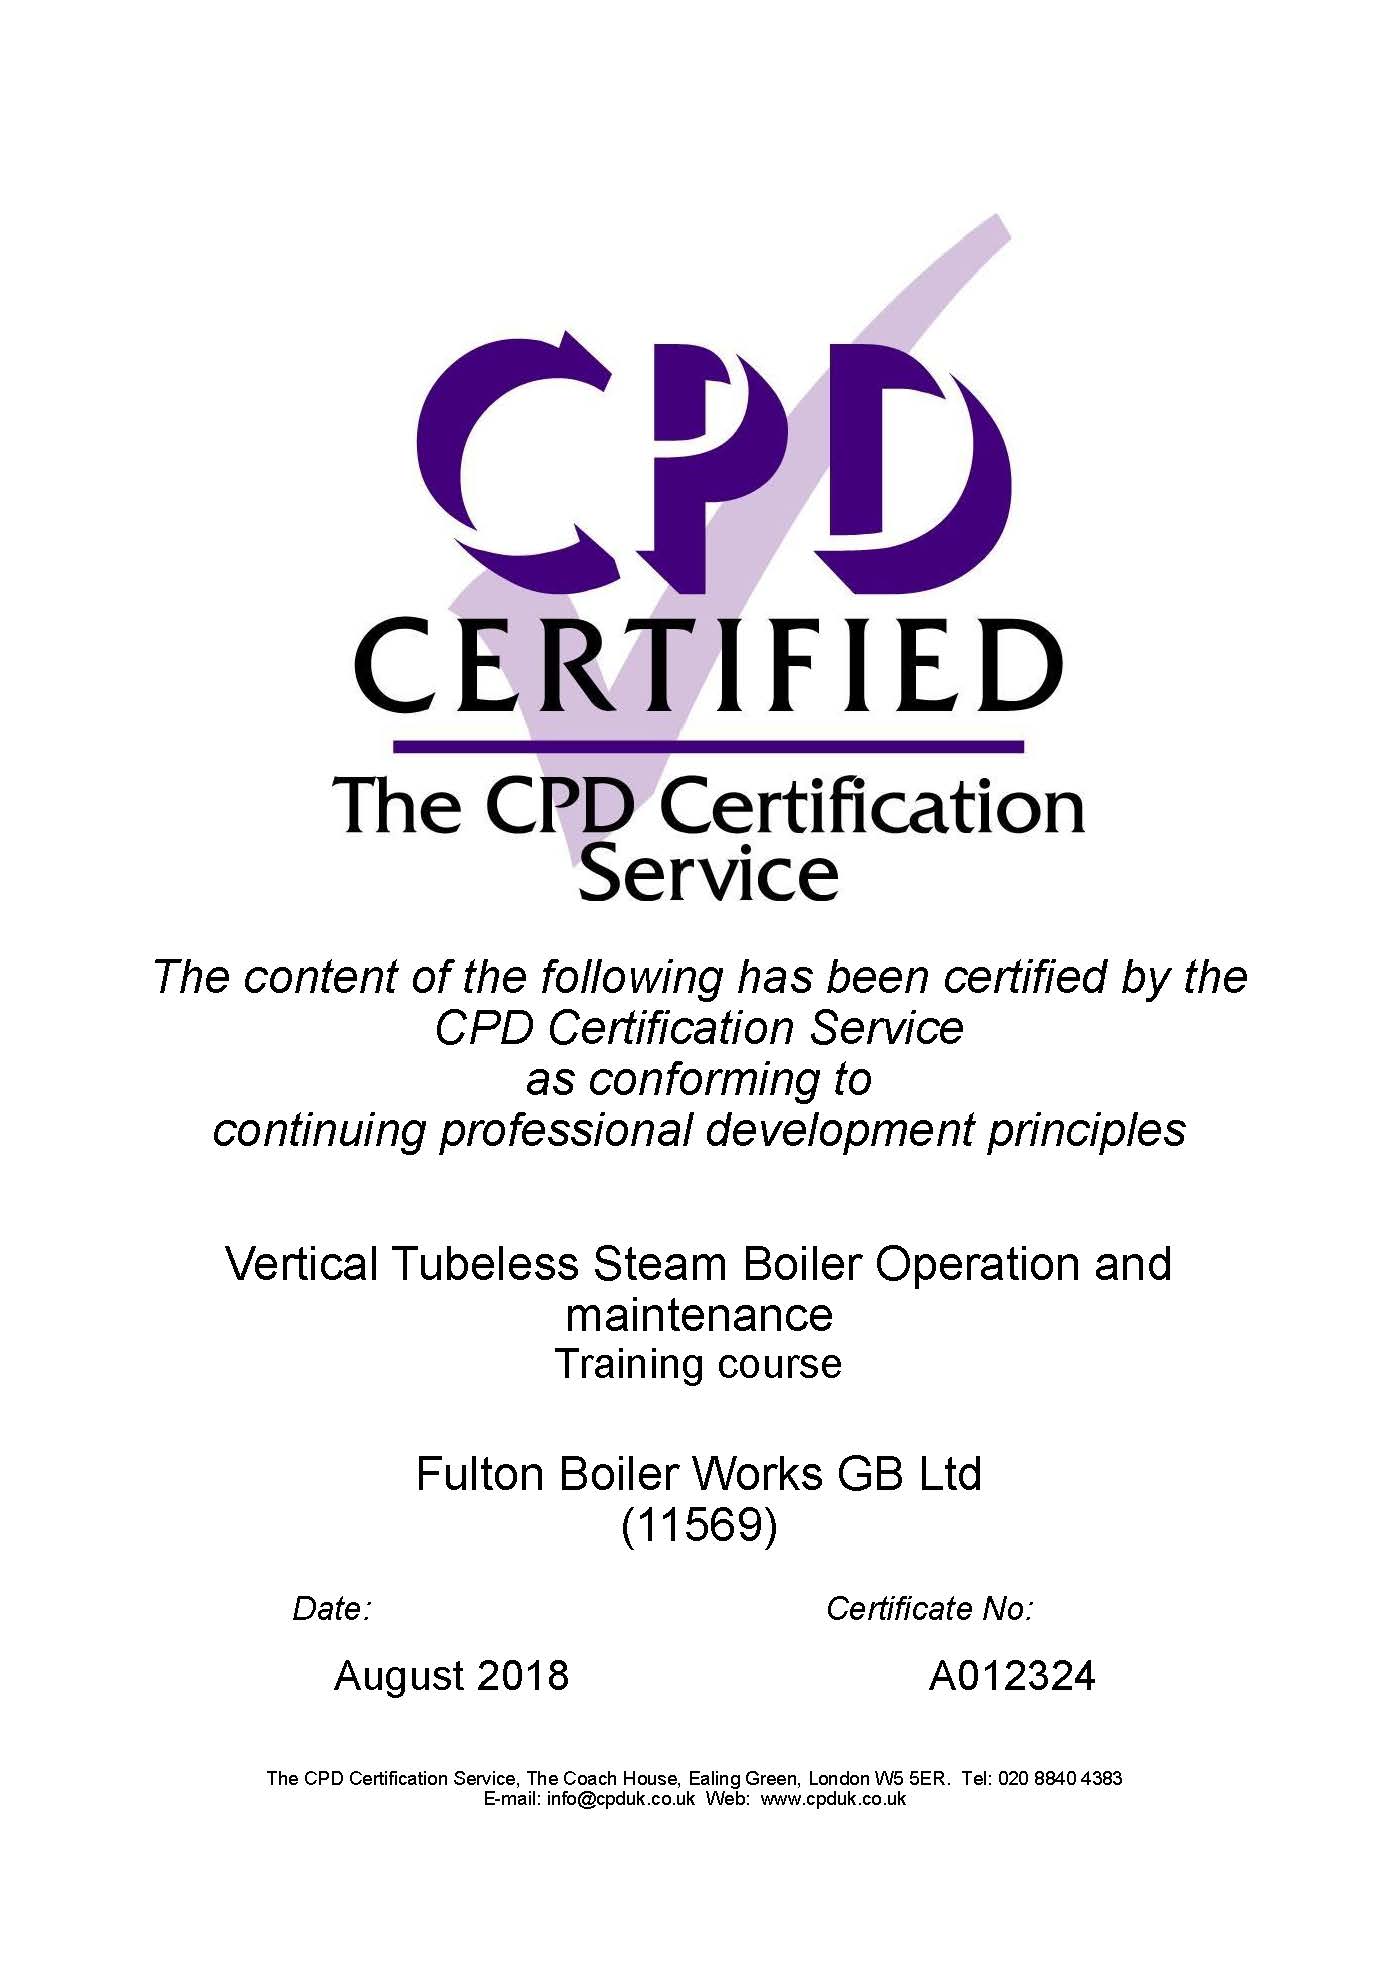 Fulton_CPD_Certification.jpg